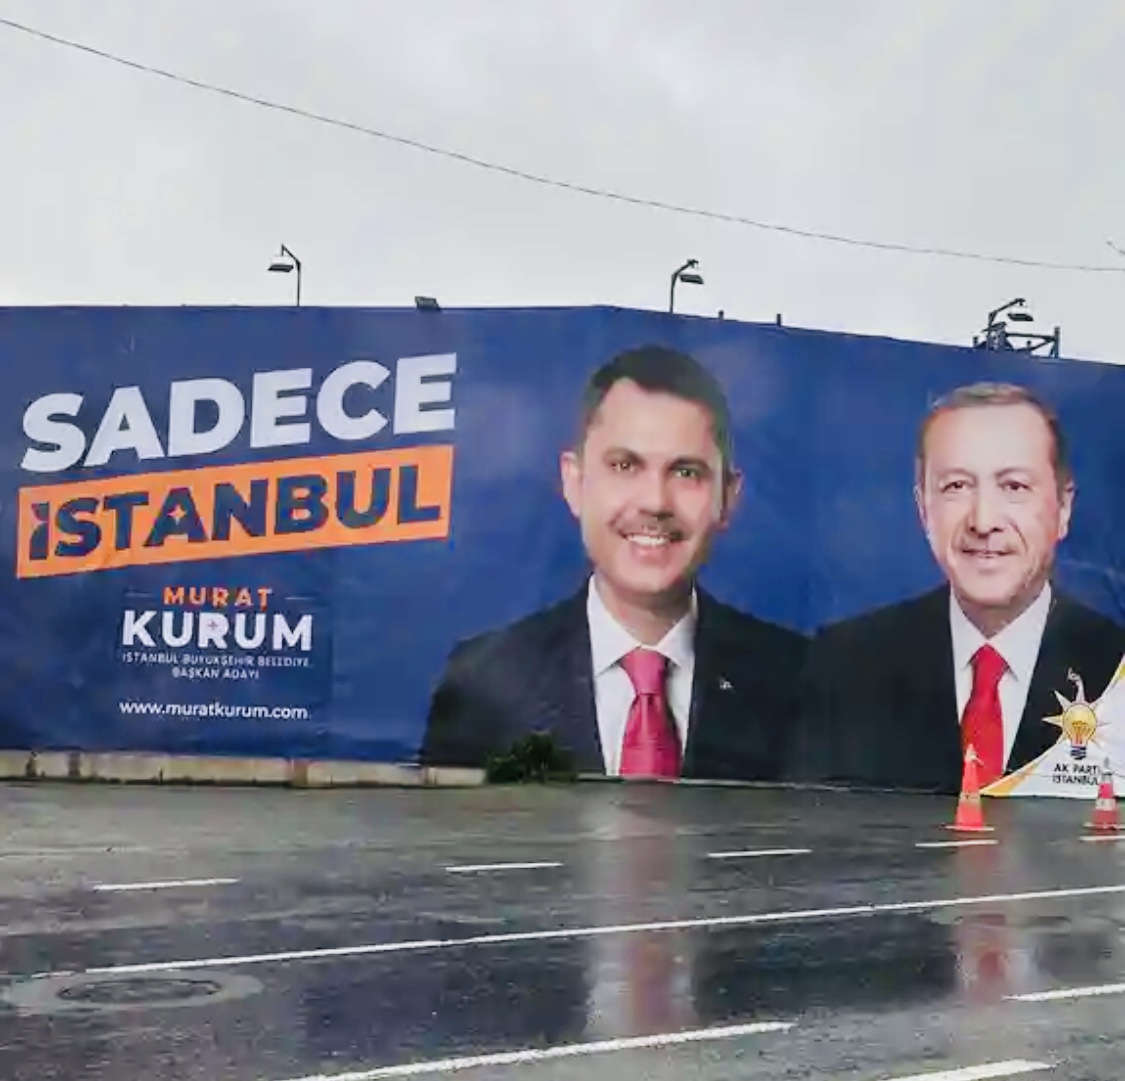 زلزله سیاسی در ترکیه، آیا دوران پسا اردوغان فرا رسیده است؟